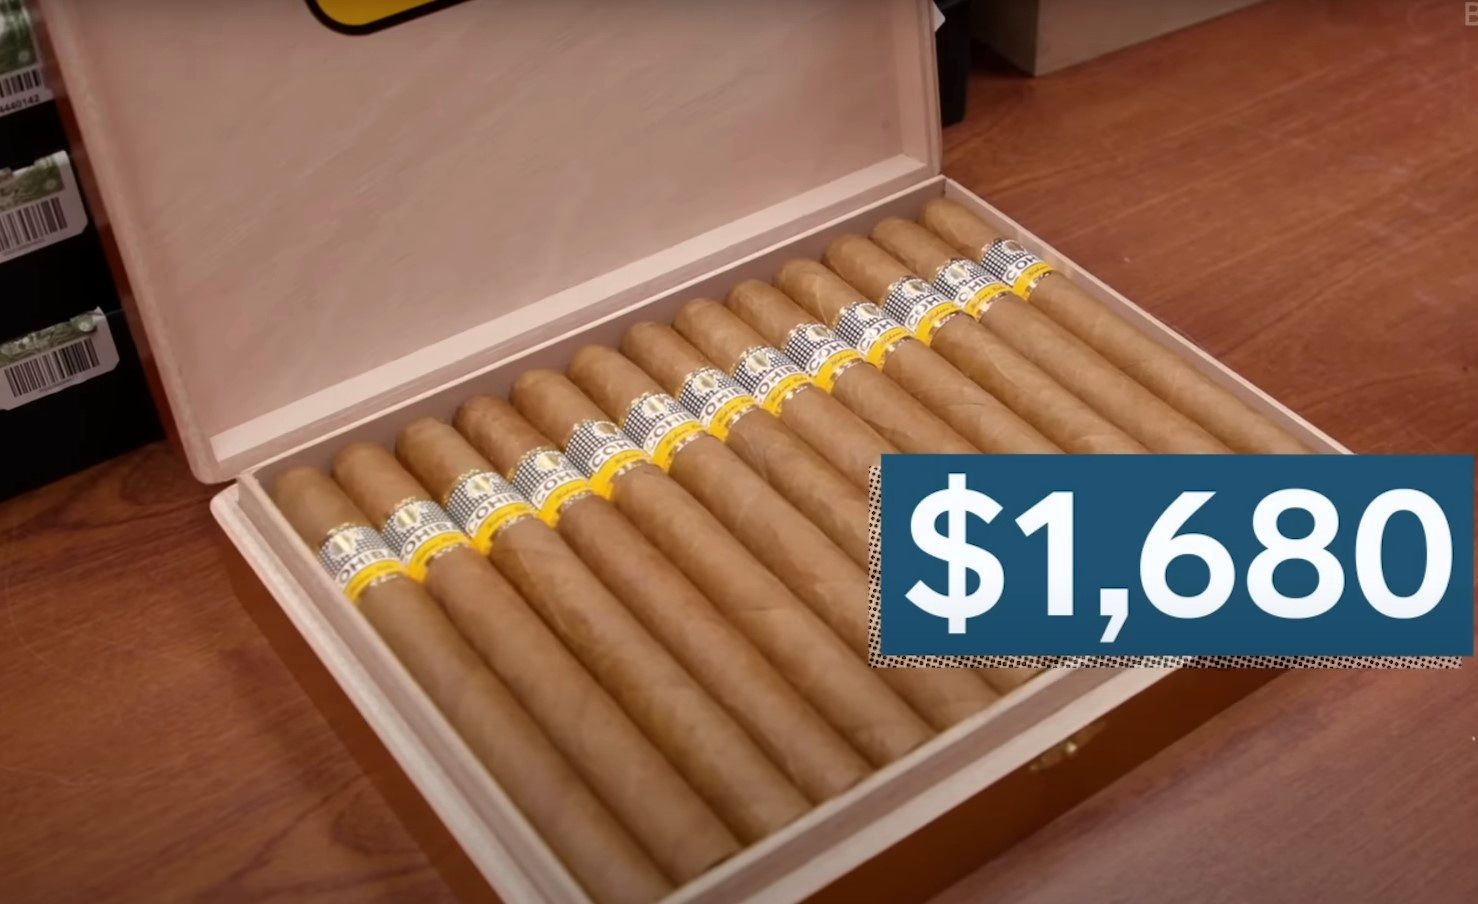 (ویدئو) فرآیند تهیه و تولید سیگار برگ لوکس کوبایی؛ یک بسته 13 نخی 92 میلیون!